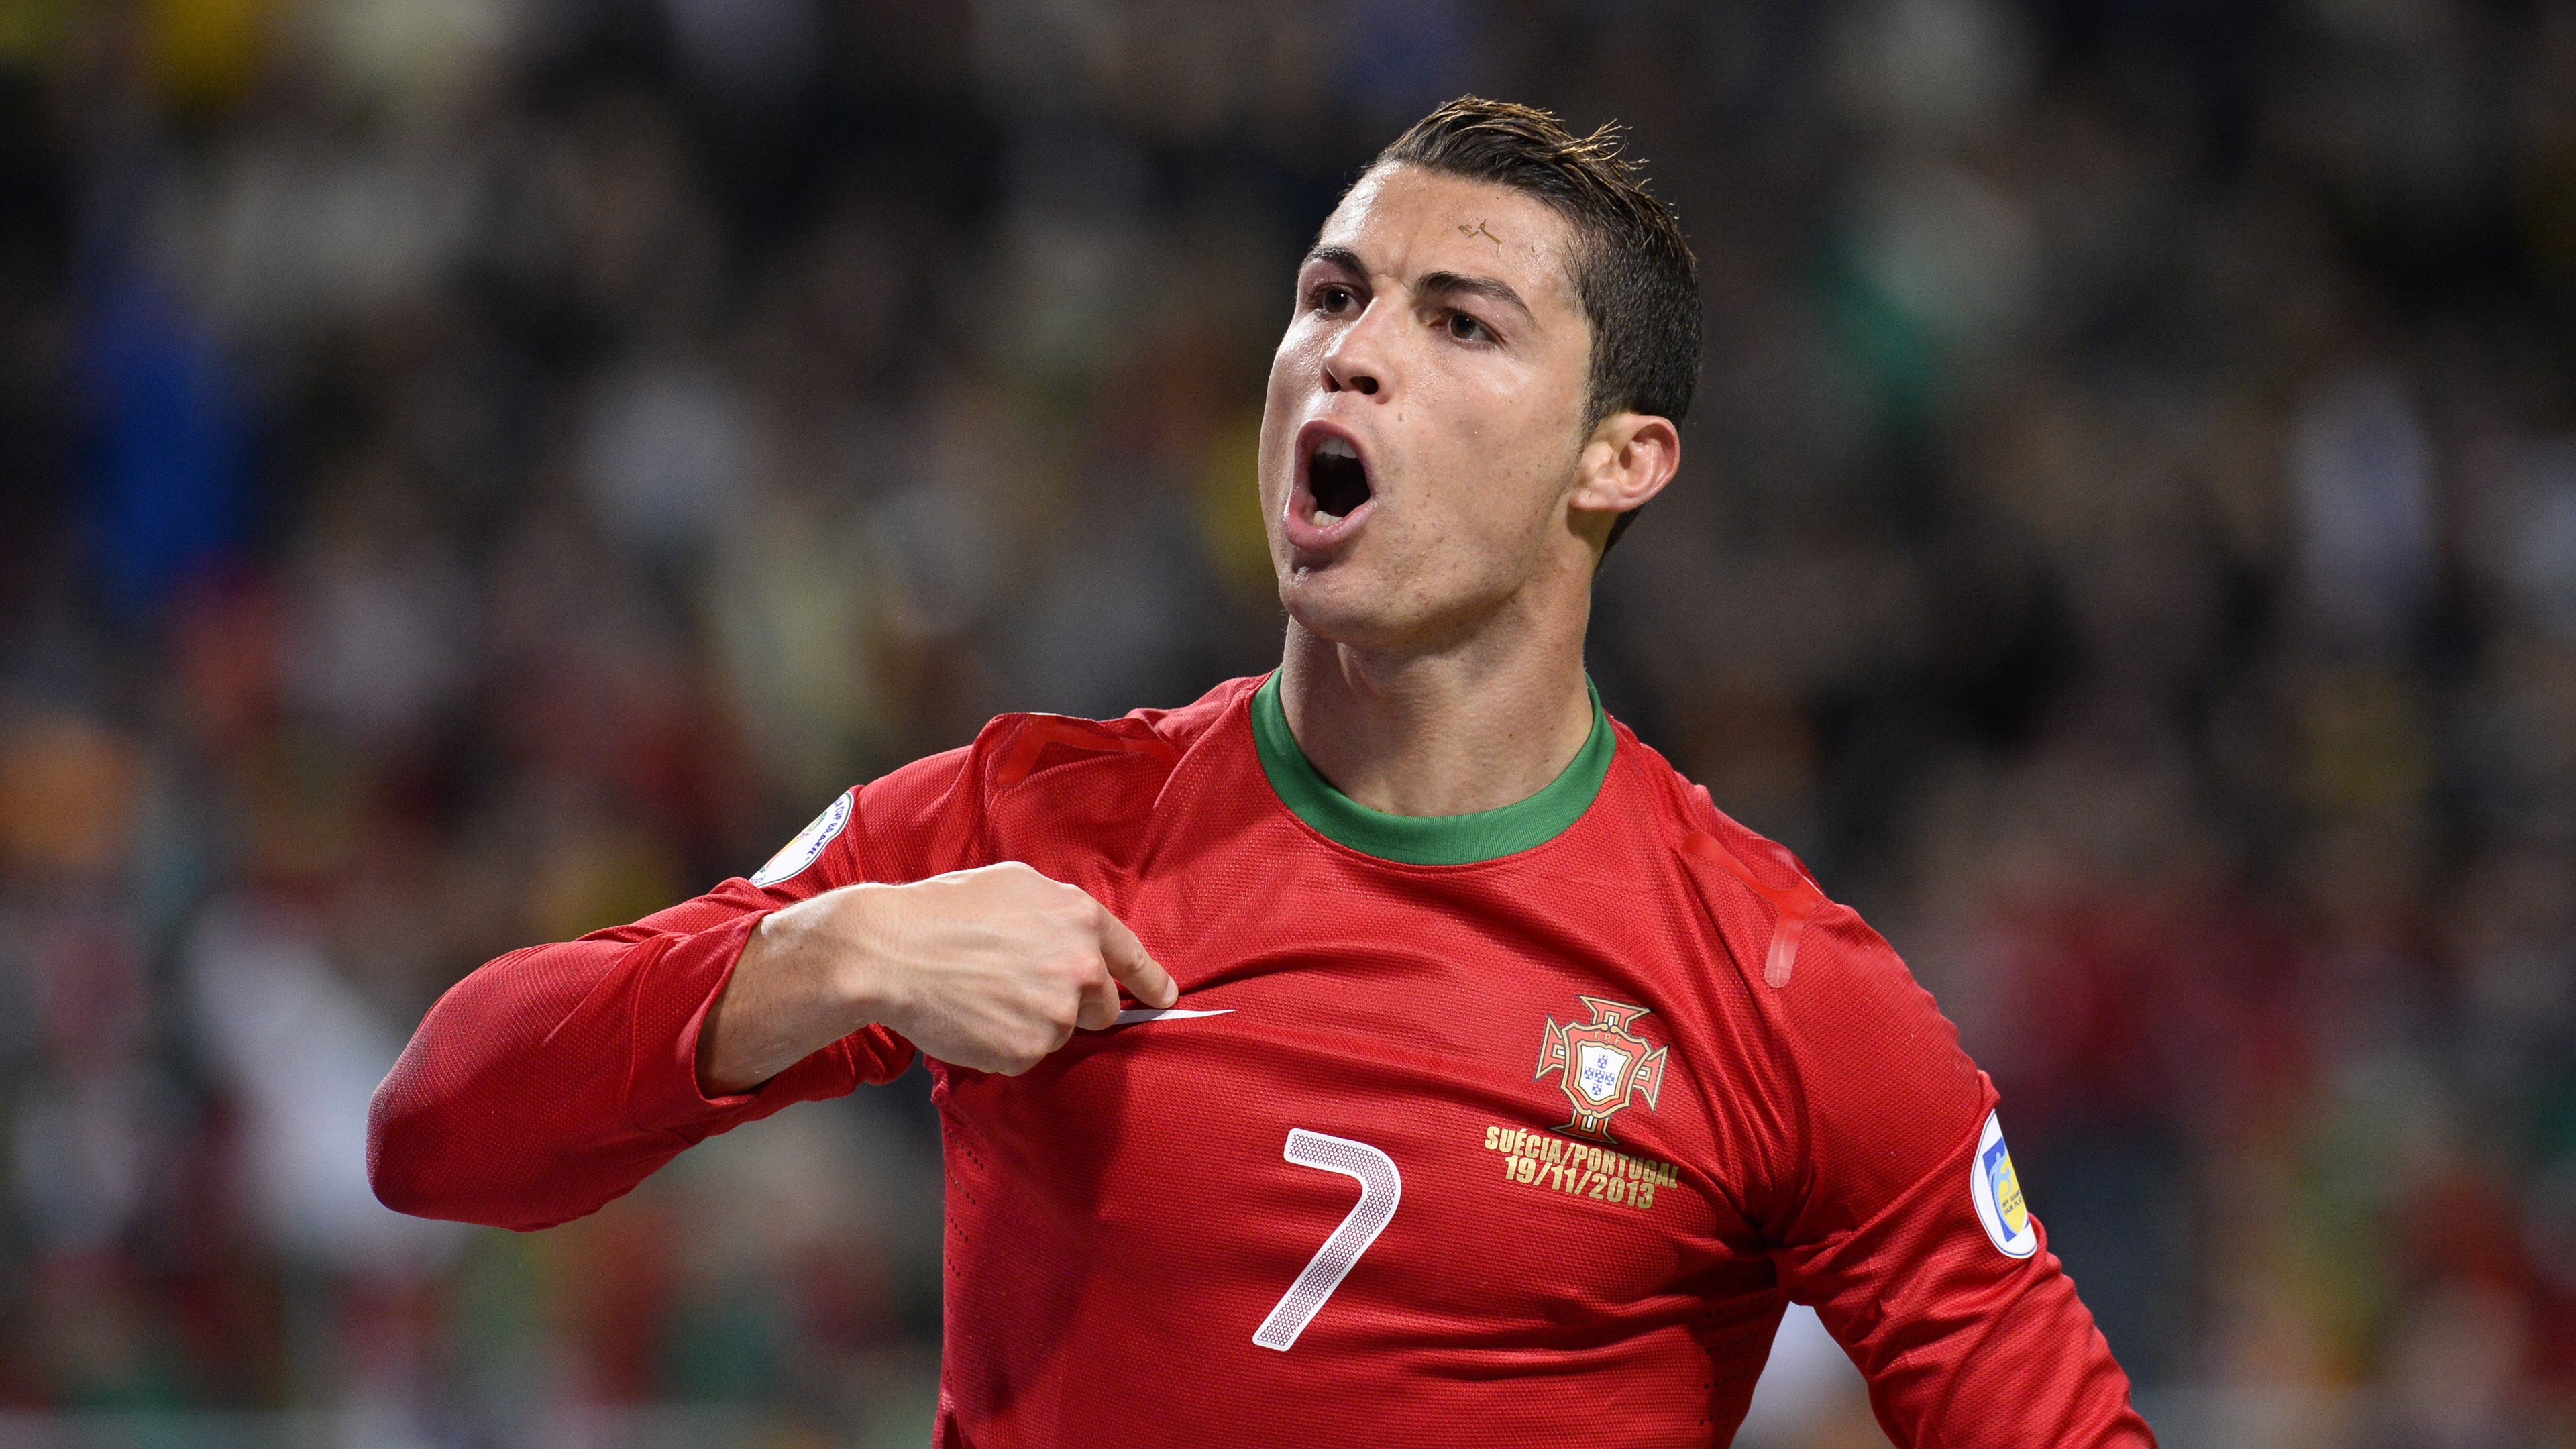 Ảnh Ronaldo 4K - Hình nền Ronaldo 2022 đẹp nhất